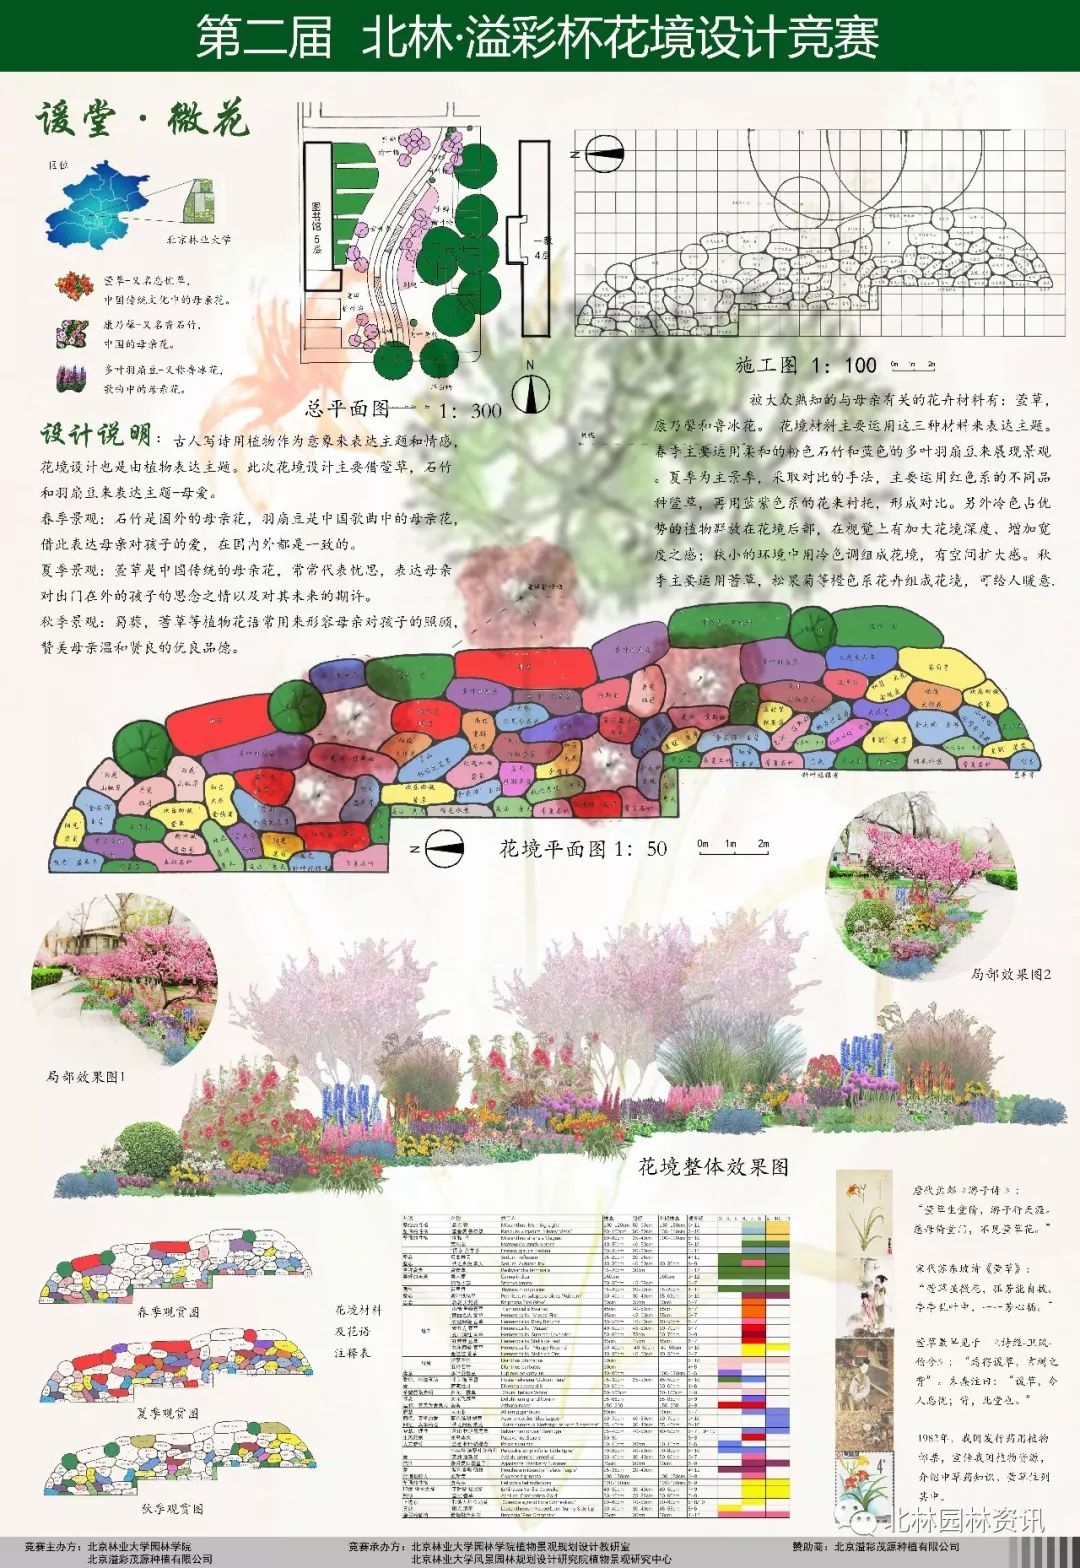 第二届“北林-溢彩杯”大学生花境设计竞赛获奖作品展